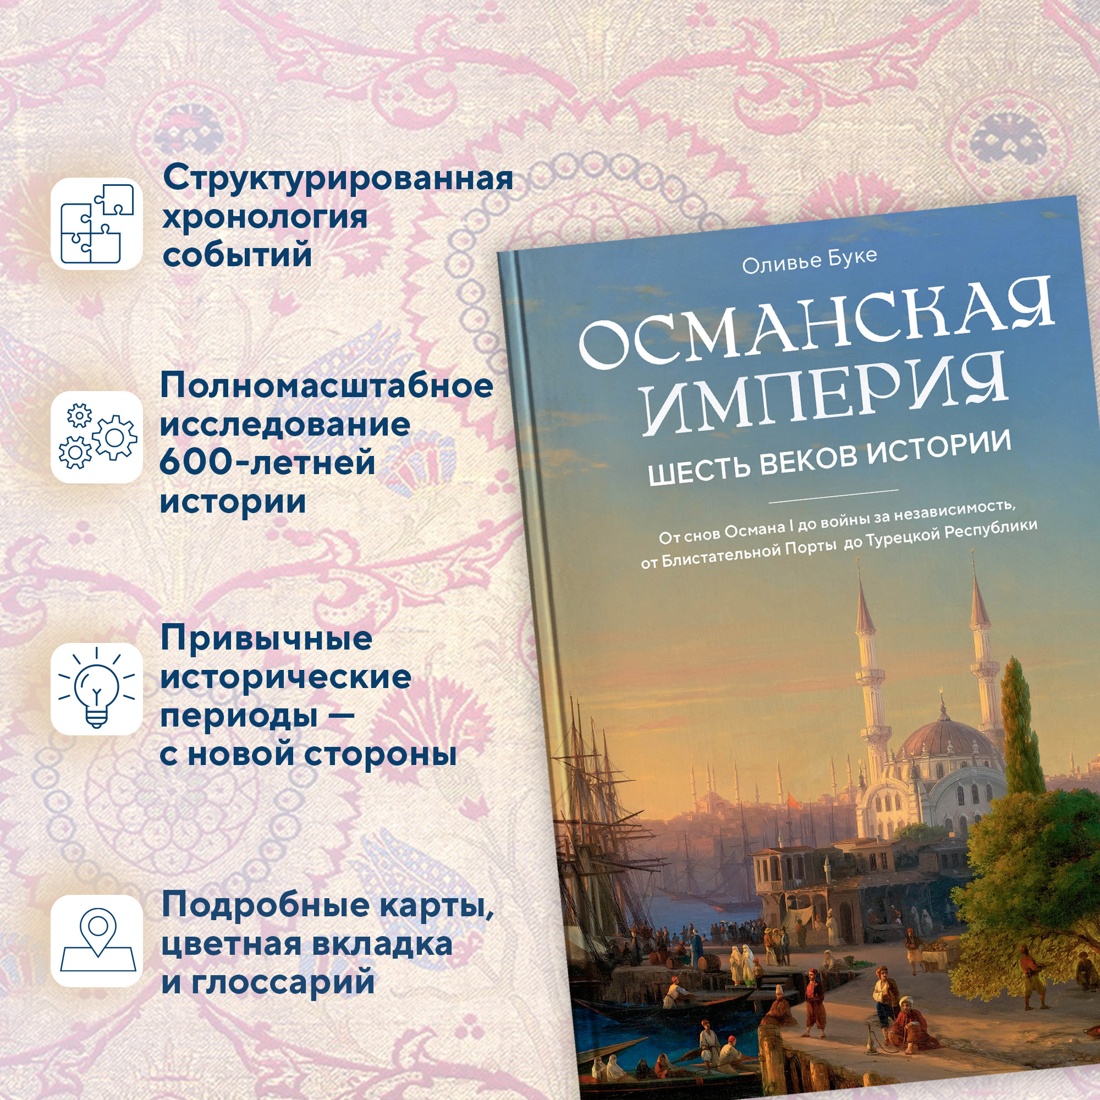 Промо материал к книге "Османская империя. Шесть веков истории" №1